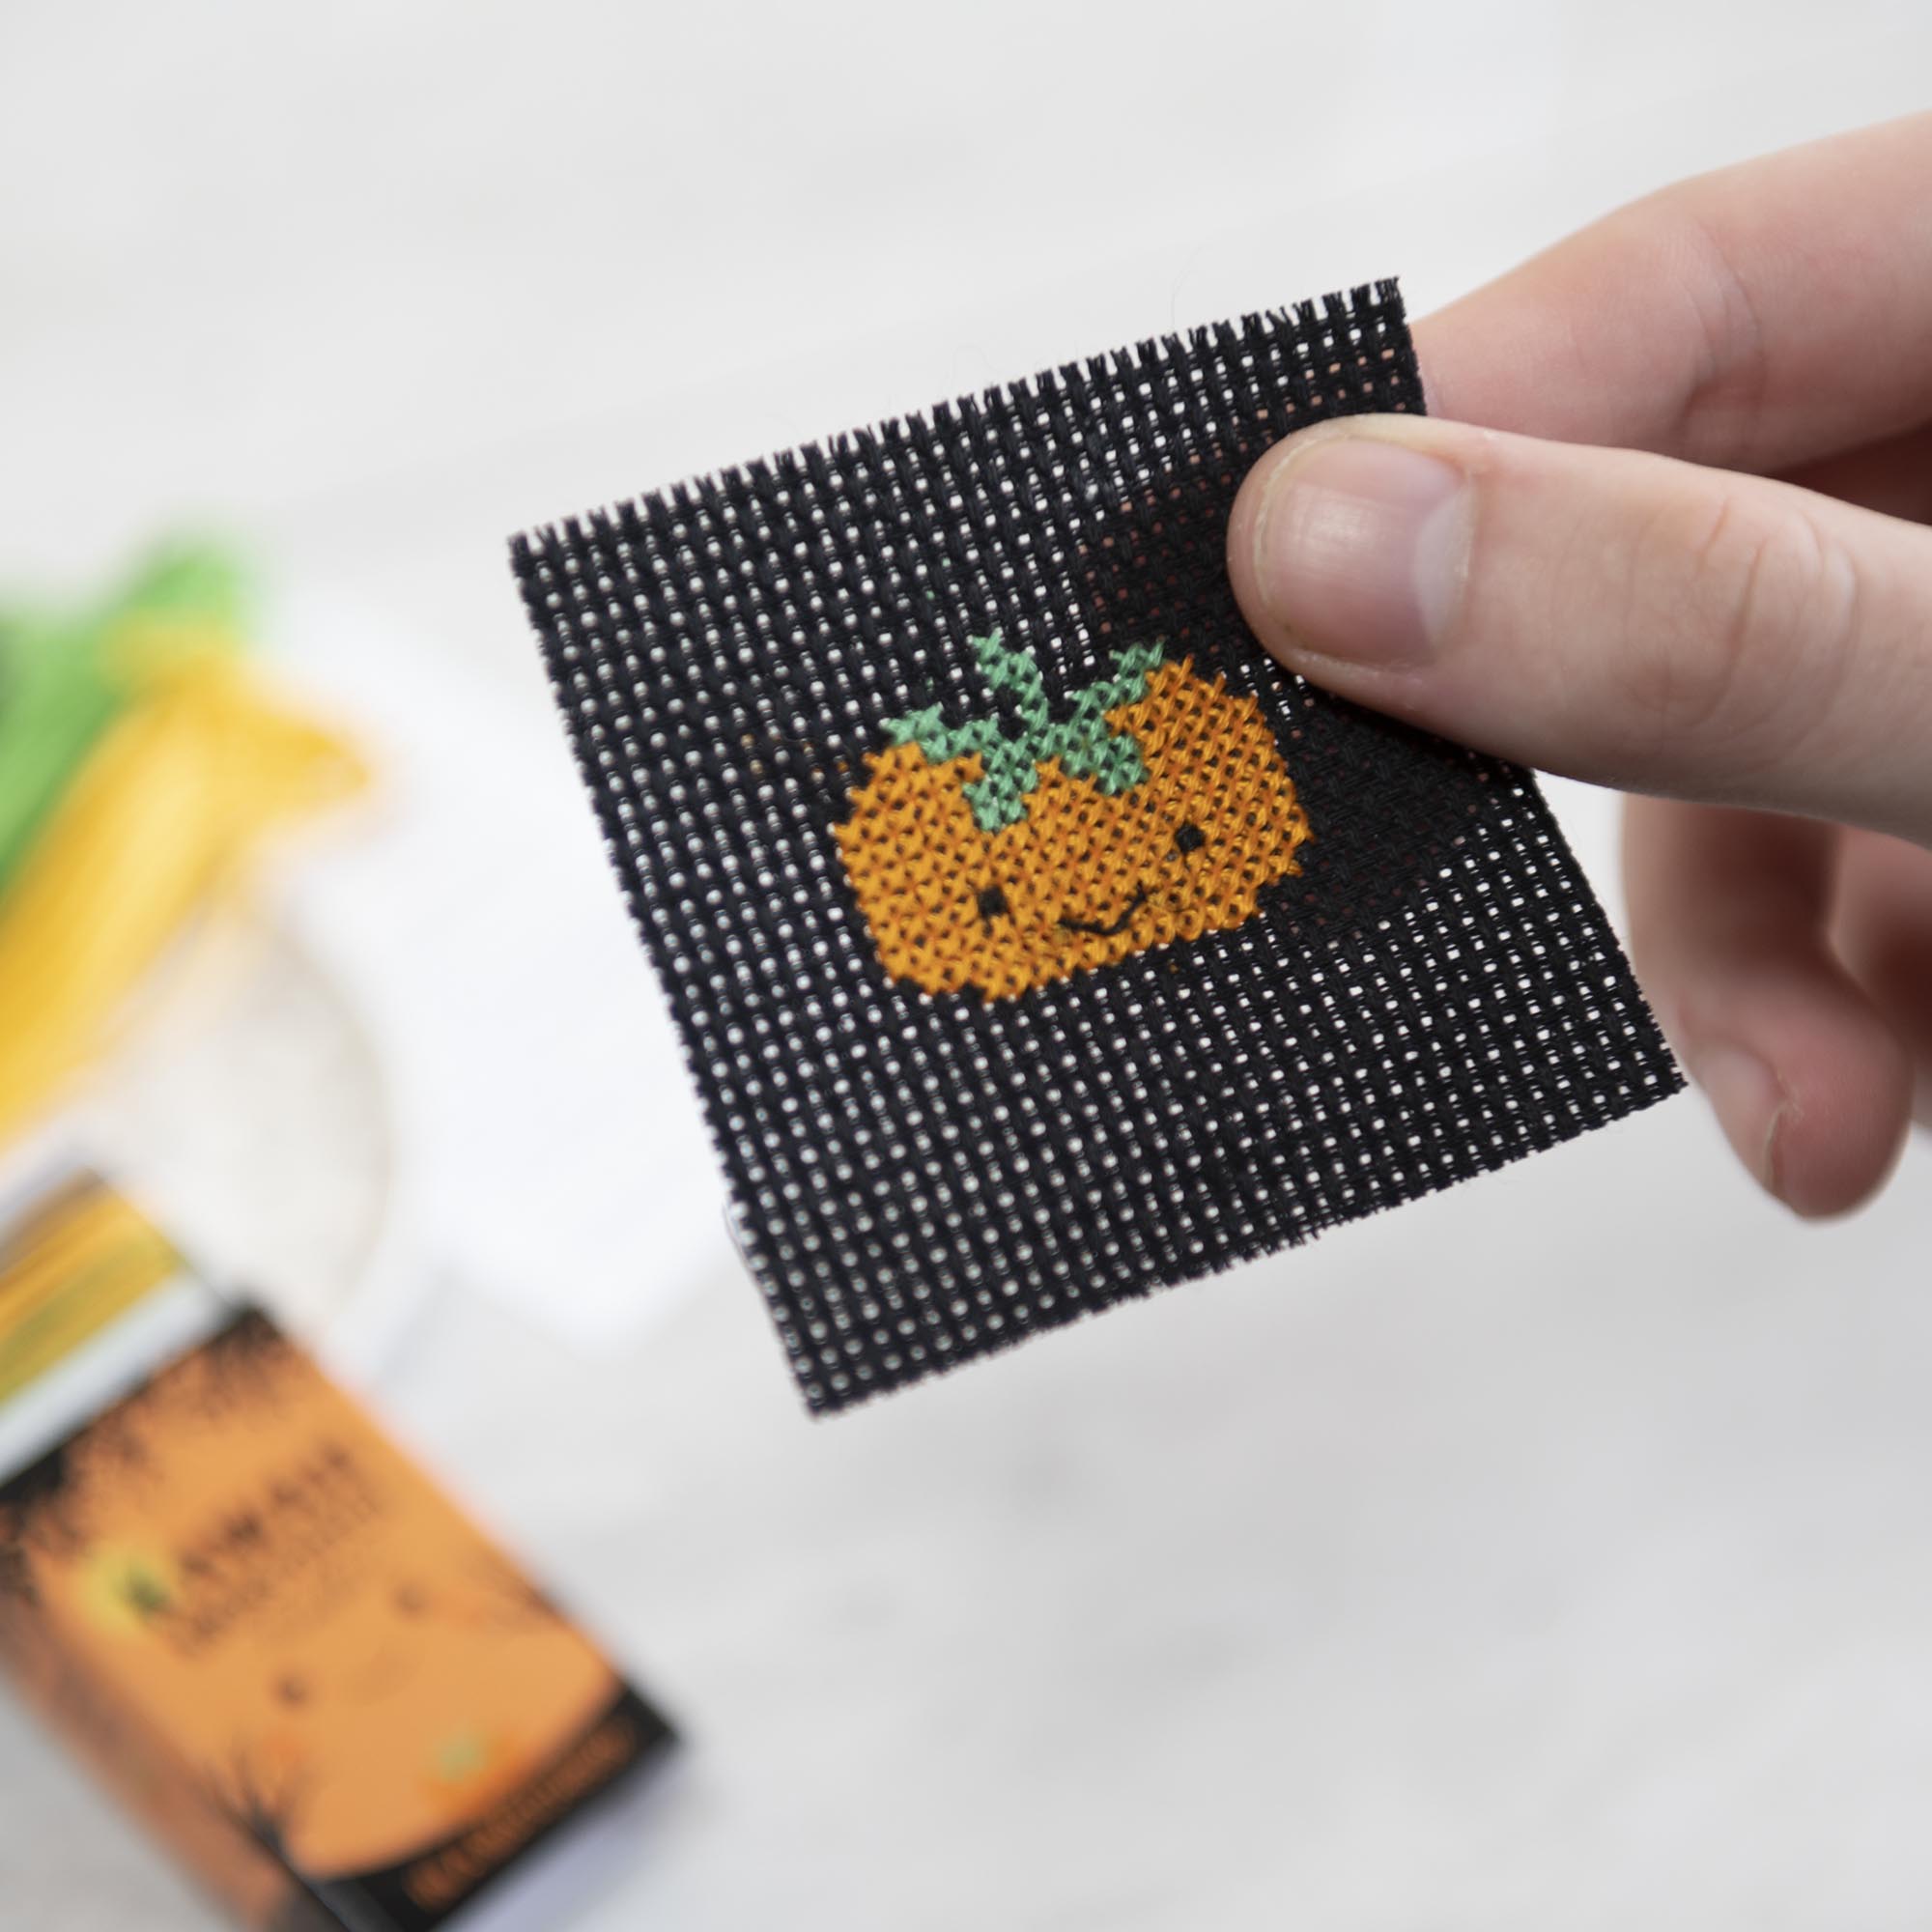 Mini Cross Stitch Kit With Kawaii Halloween Pumpkin In A Matchbox